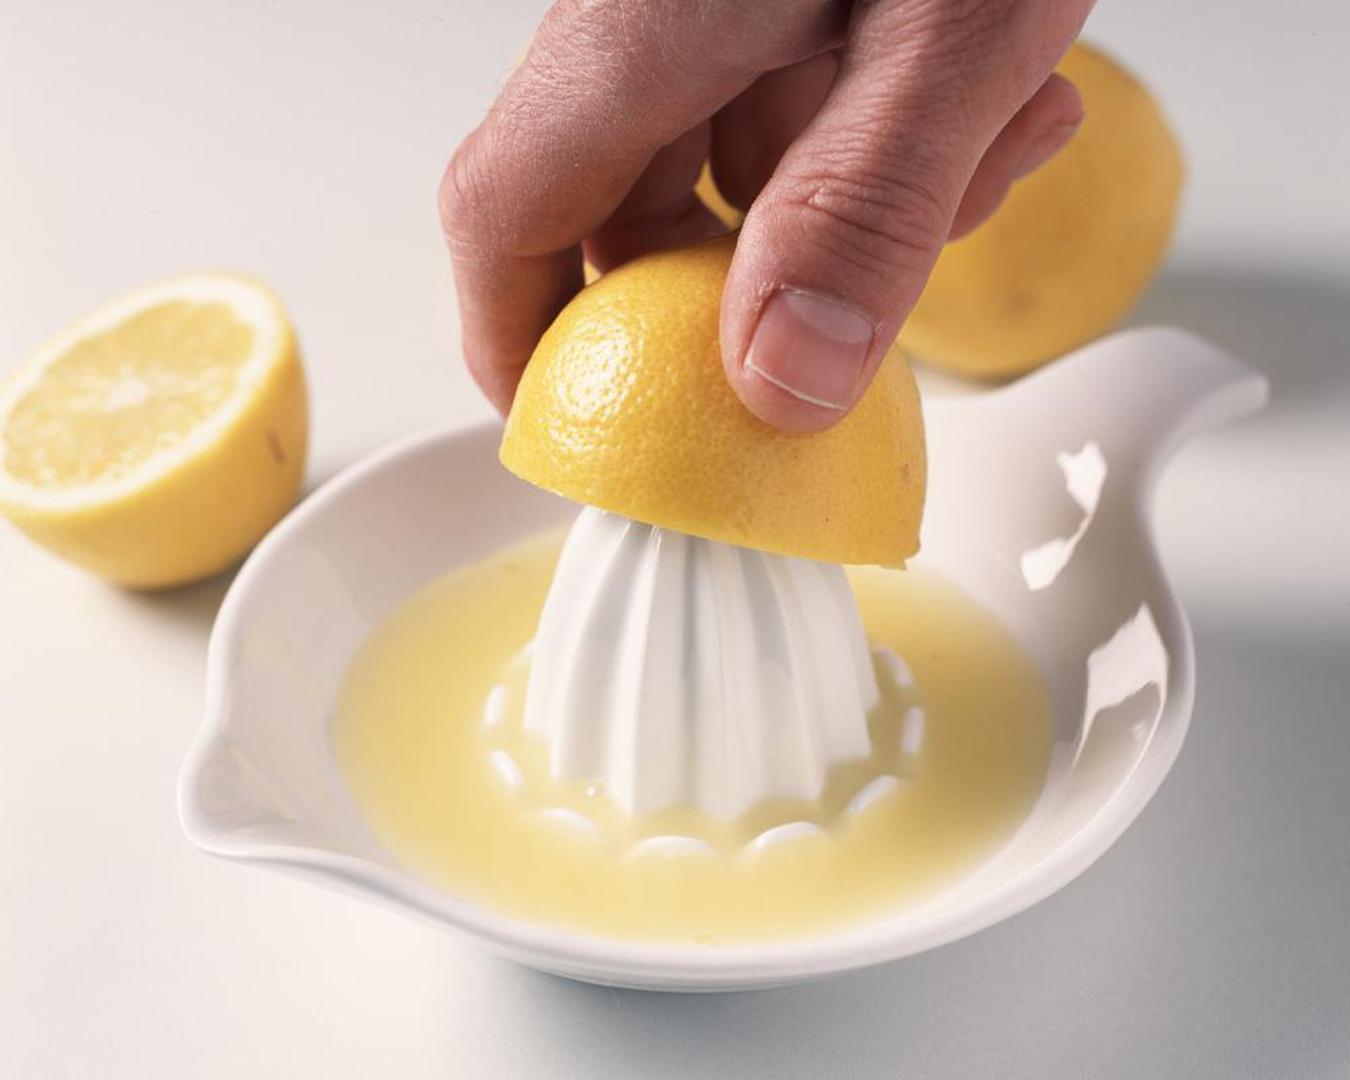 Kako biste dobili više limunova soka, stavite limun u mikrovalnu nanajveću temperaturu 10-15 sekundi. To će biti dovoljno da se sok oslobodi.